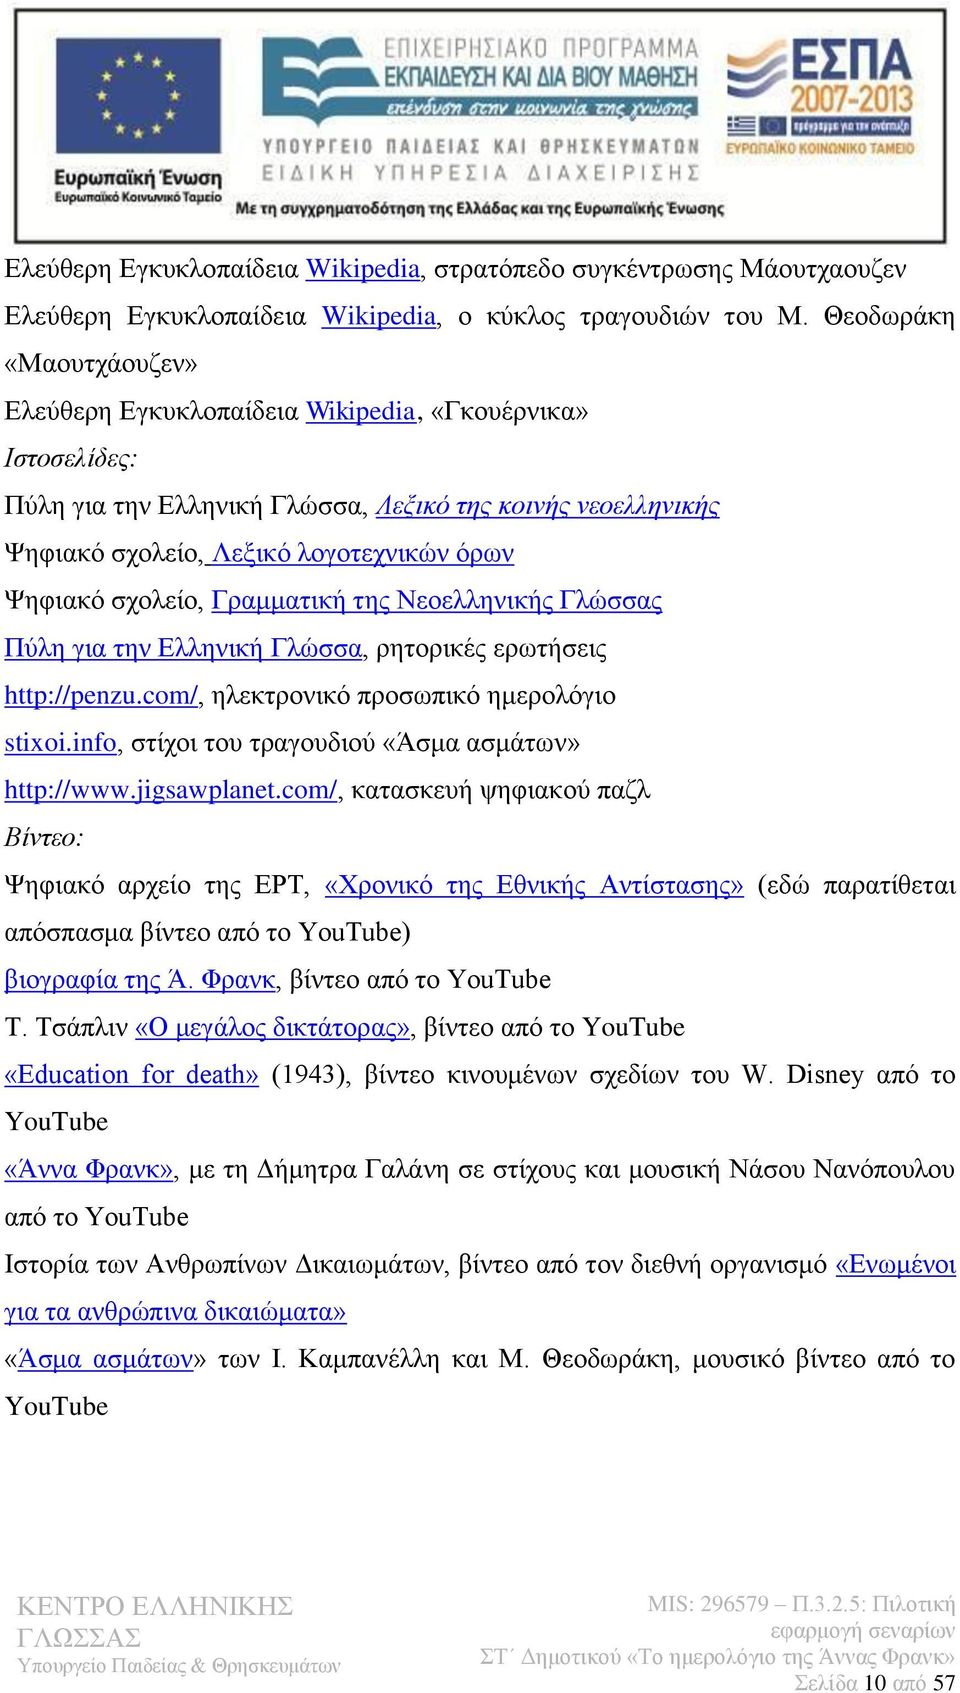 σχολείο, Γραμματική της Νεοελληνικής Γλώσσας Πύλη για την Ελληνική Γλώσσα, ρητορικές ερωτήσεις http://penzu.com/, ηλεκτρονικό προσωπικό ημερολόγιο stixoi.